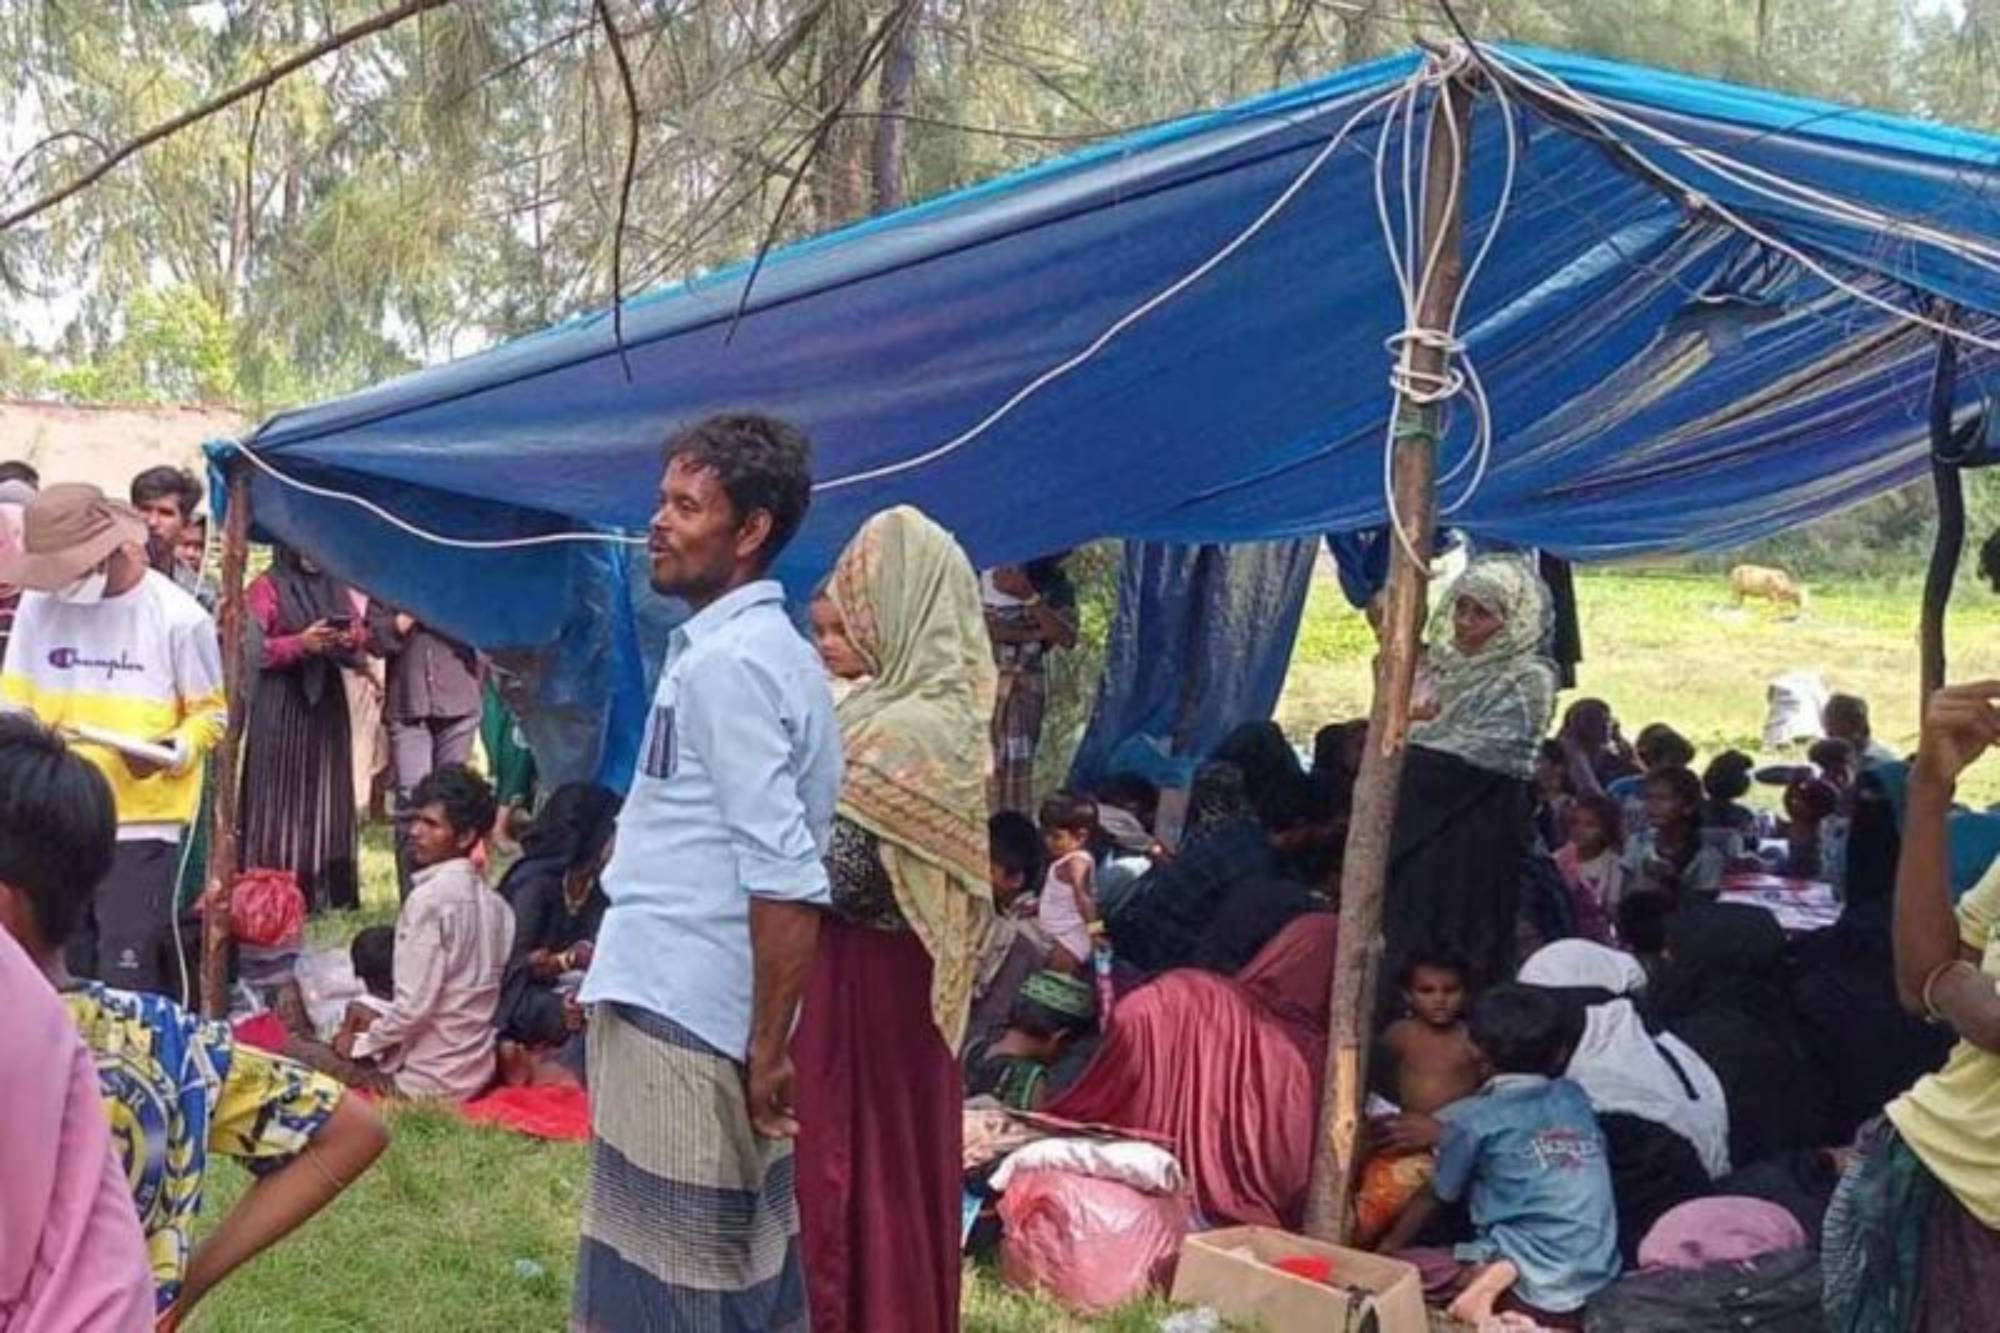 Pemkab Aceh Timur Desak UNHCR Merelokasi 154 Pengungsi Rohingya - JPNN.com